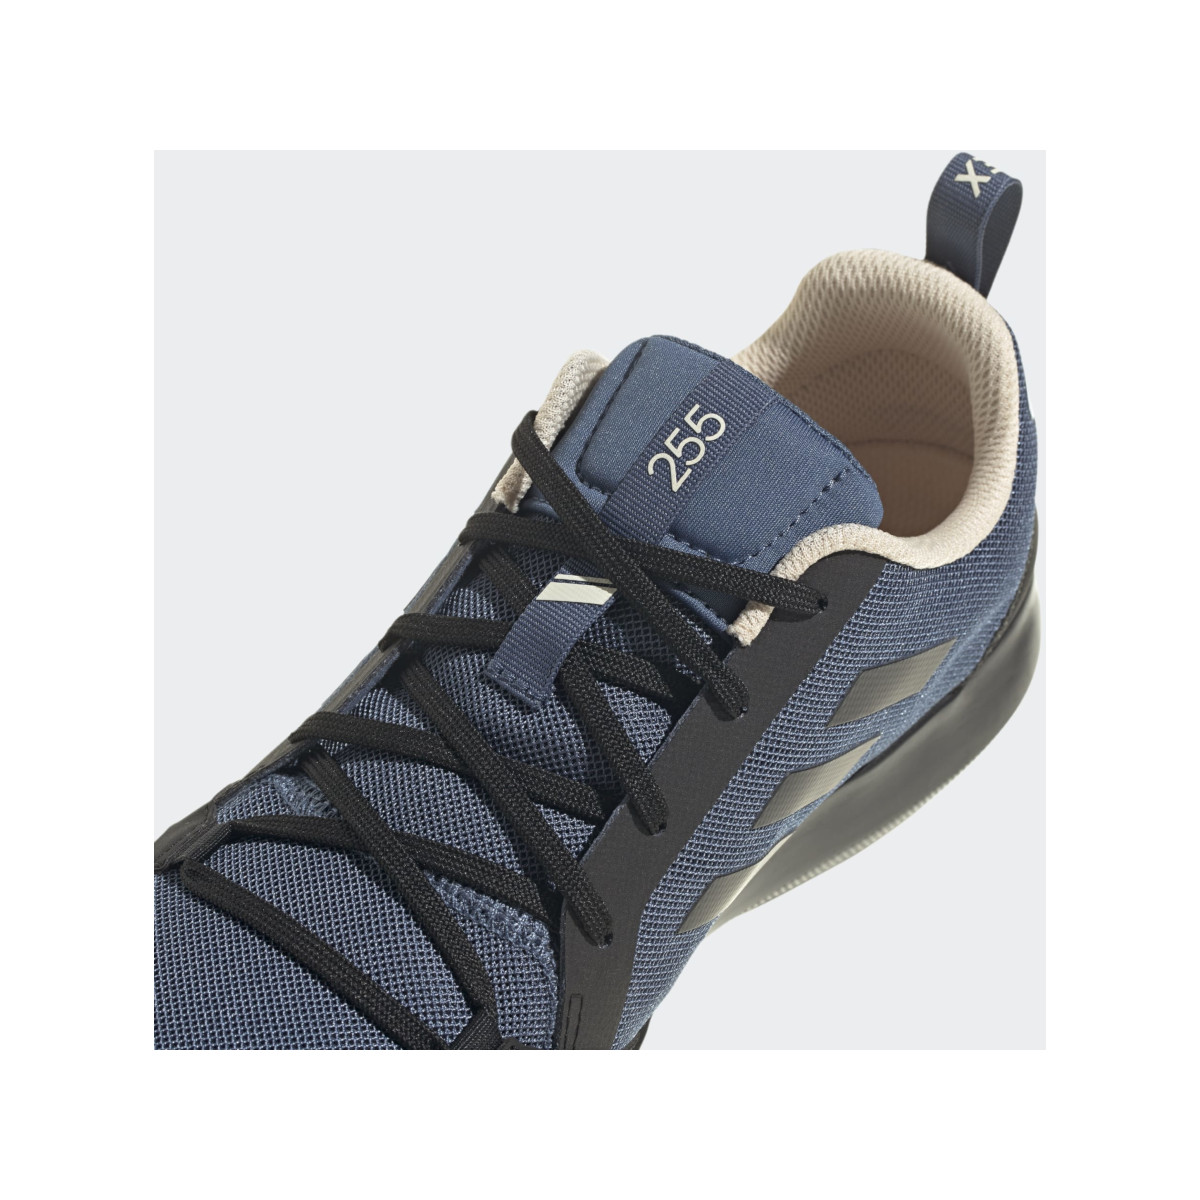 Adidas Boot Lace bootschoen heren zwart-blauw, maat 44